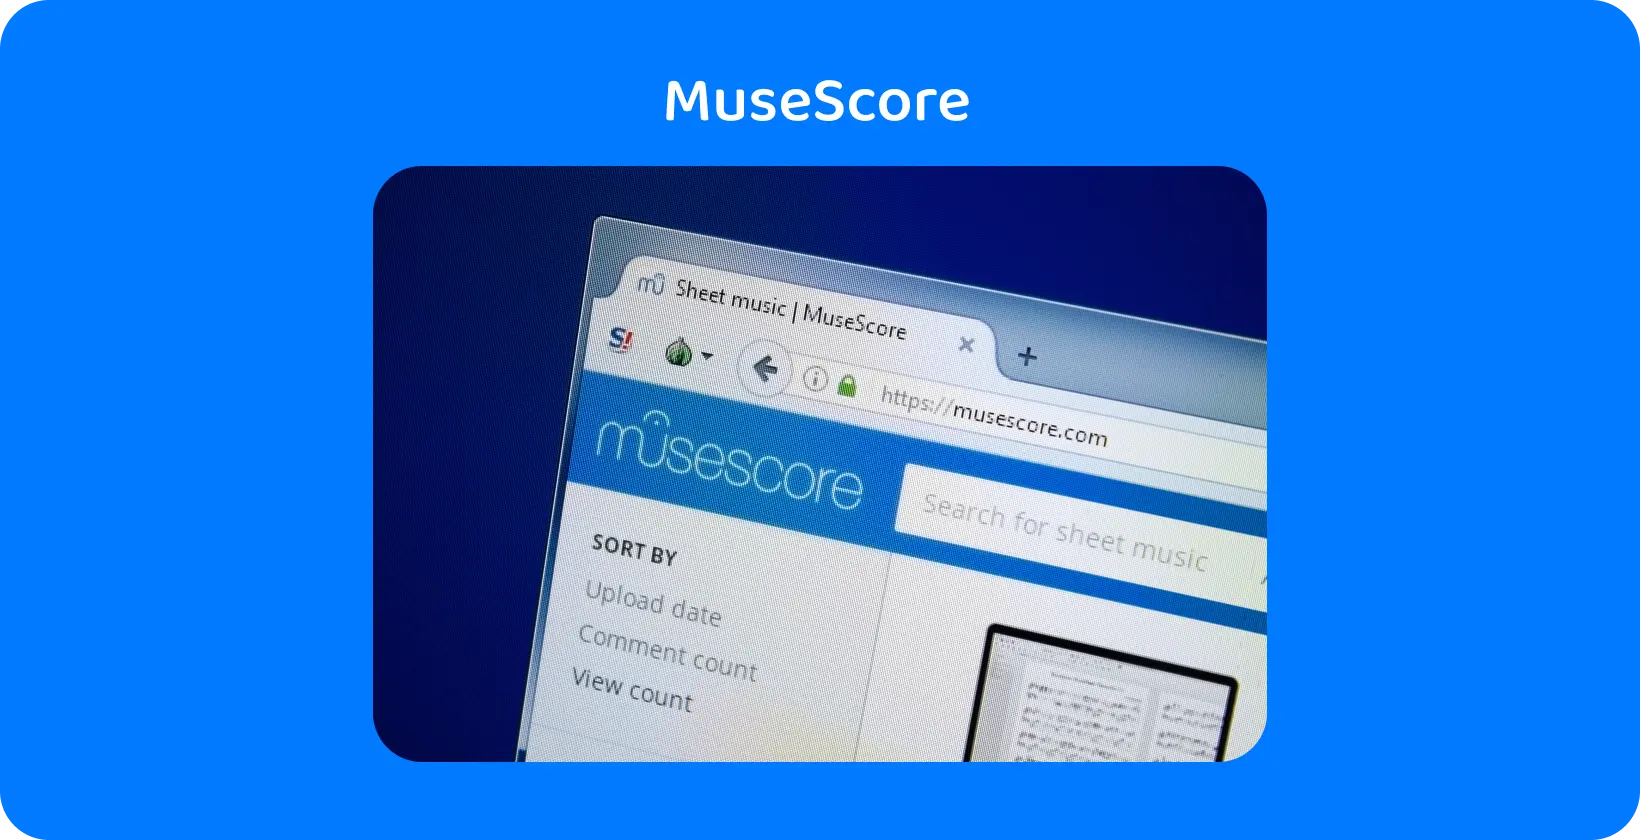 Cận cảnh trang web của MuseScore, làm nổi bật tìm kiếm bản nhạc, một công cụ chính để hướng dẫn phiên âm âm thanh.